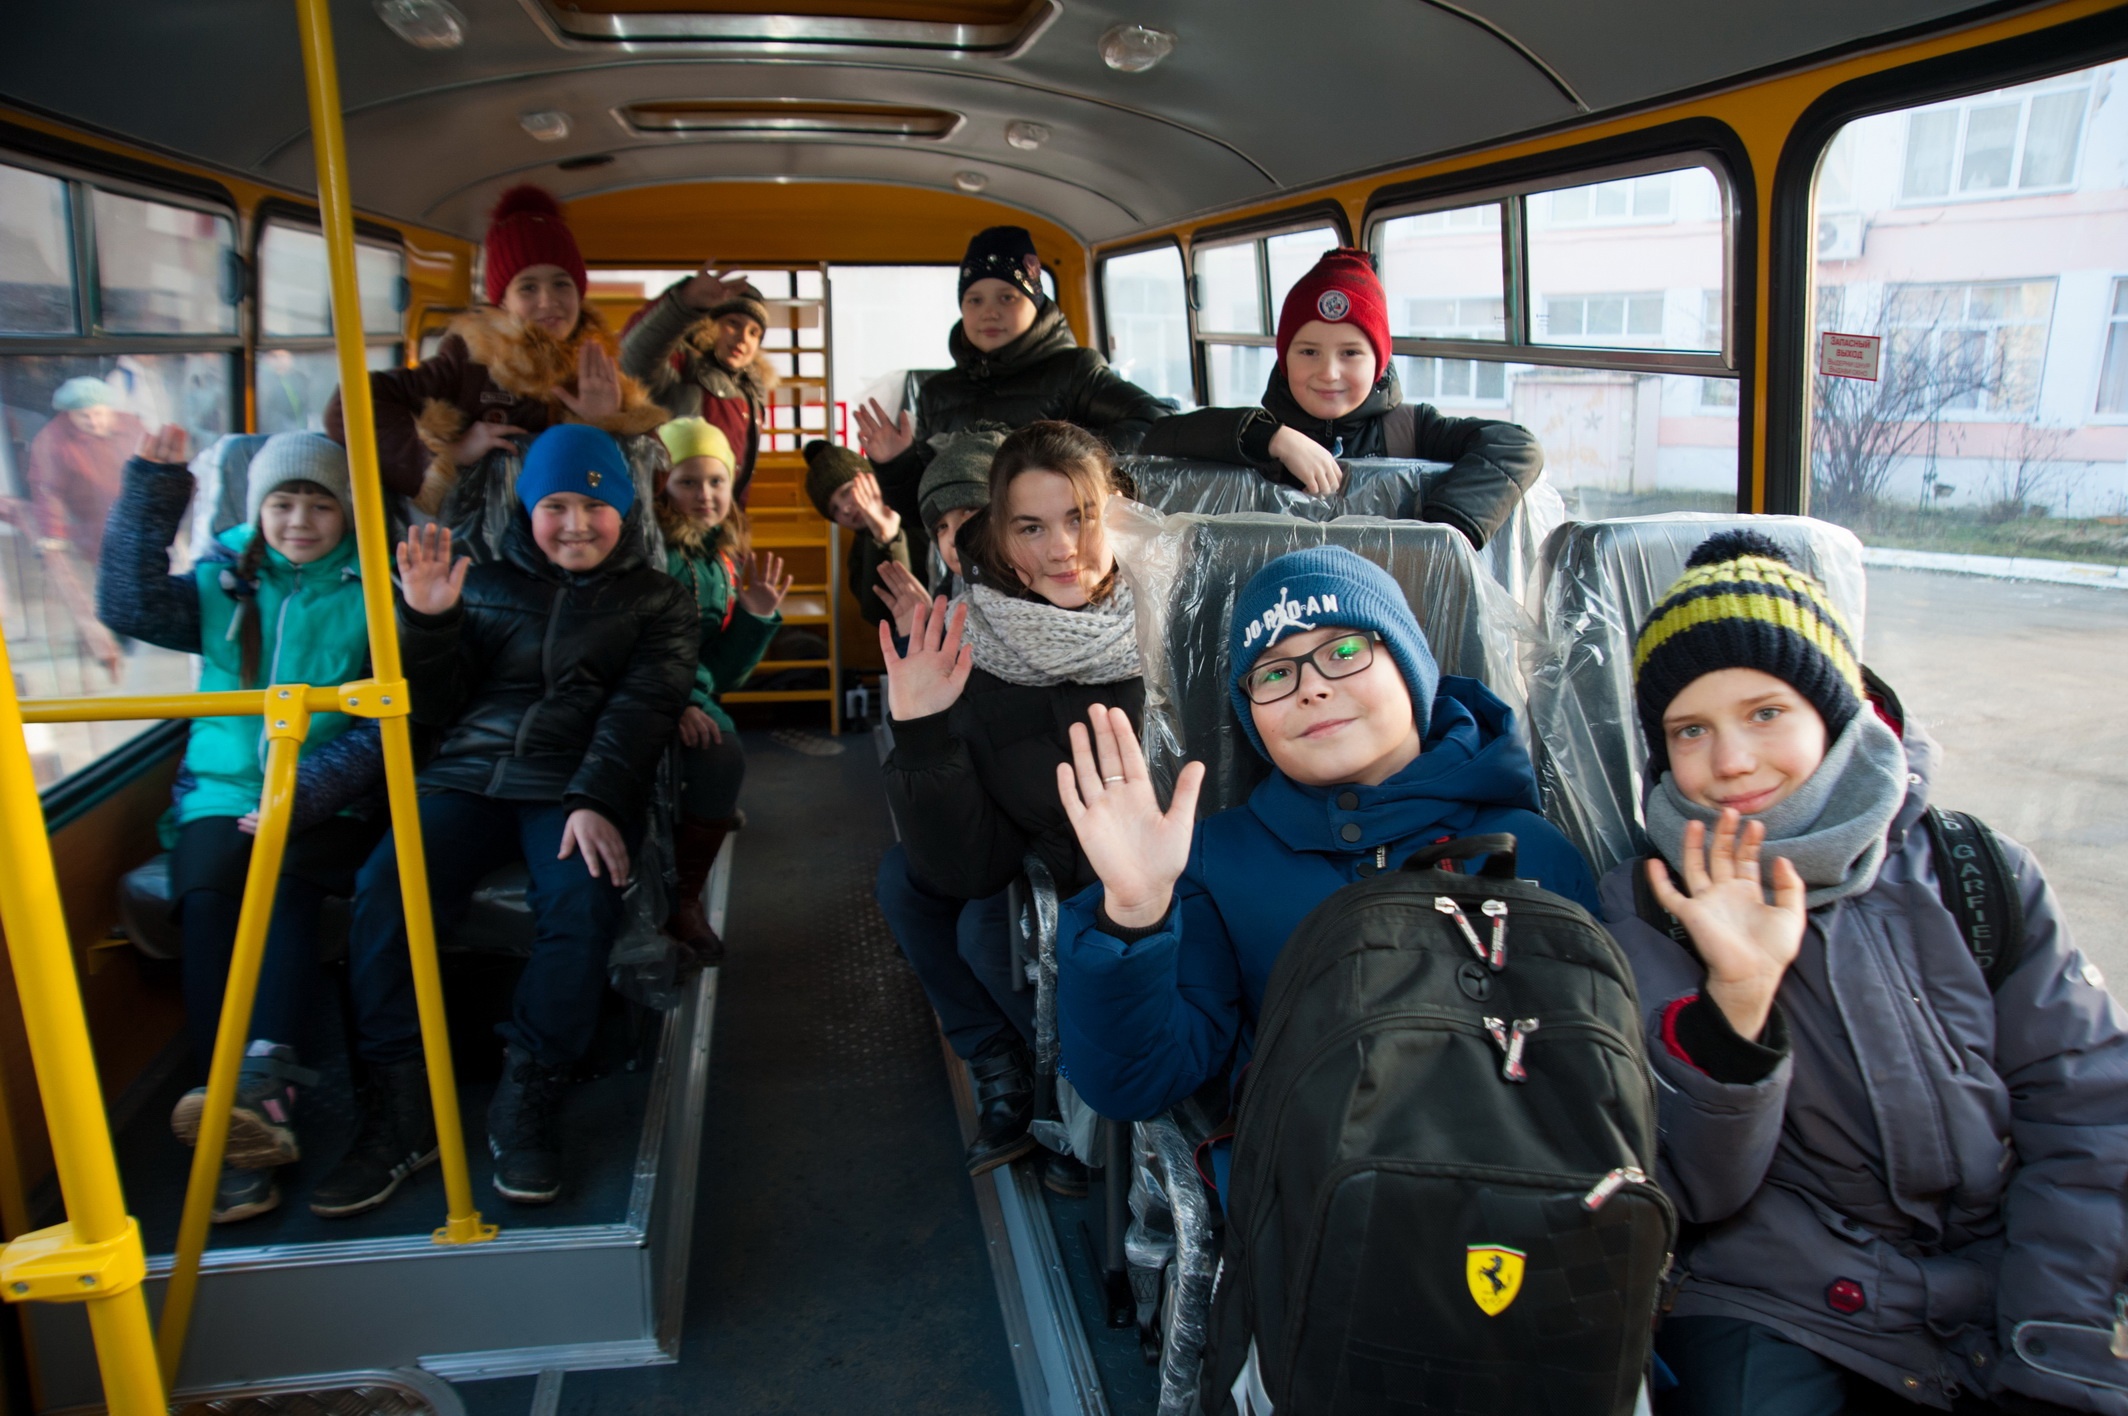 Автобусы дети новый. Автобус для детей. Школьники в автобусе. Школьный автобус дети. Школьный автобус школьники.